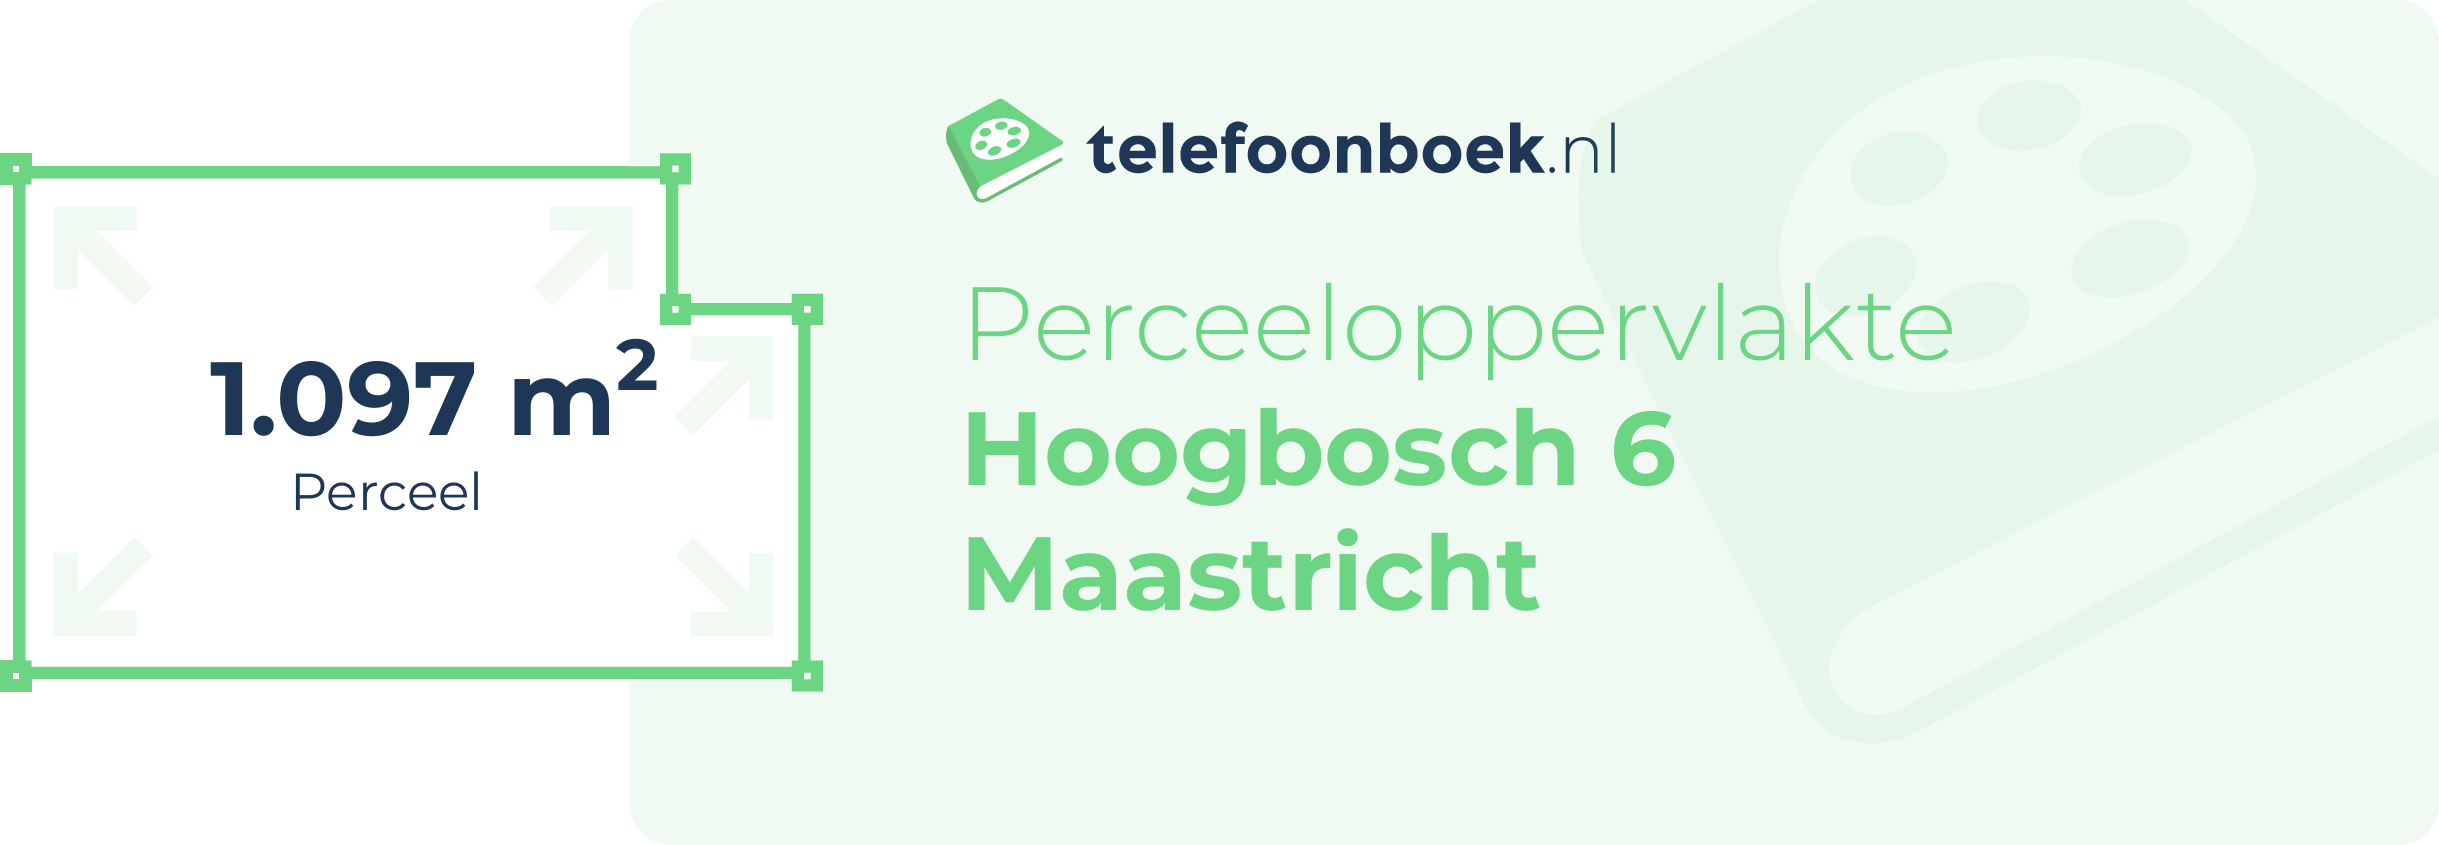 Perceeloppervlakte Hoogbosch 6 Maastricht